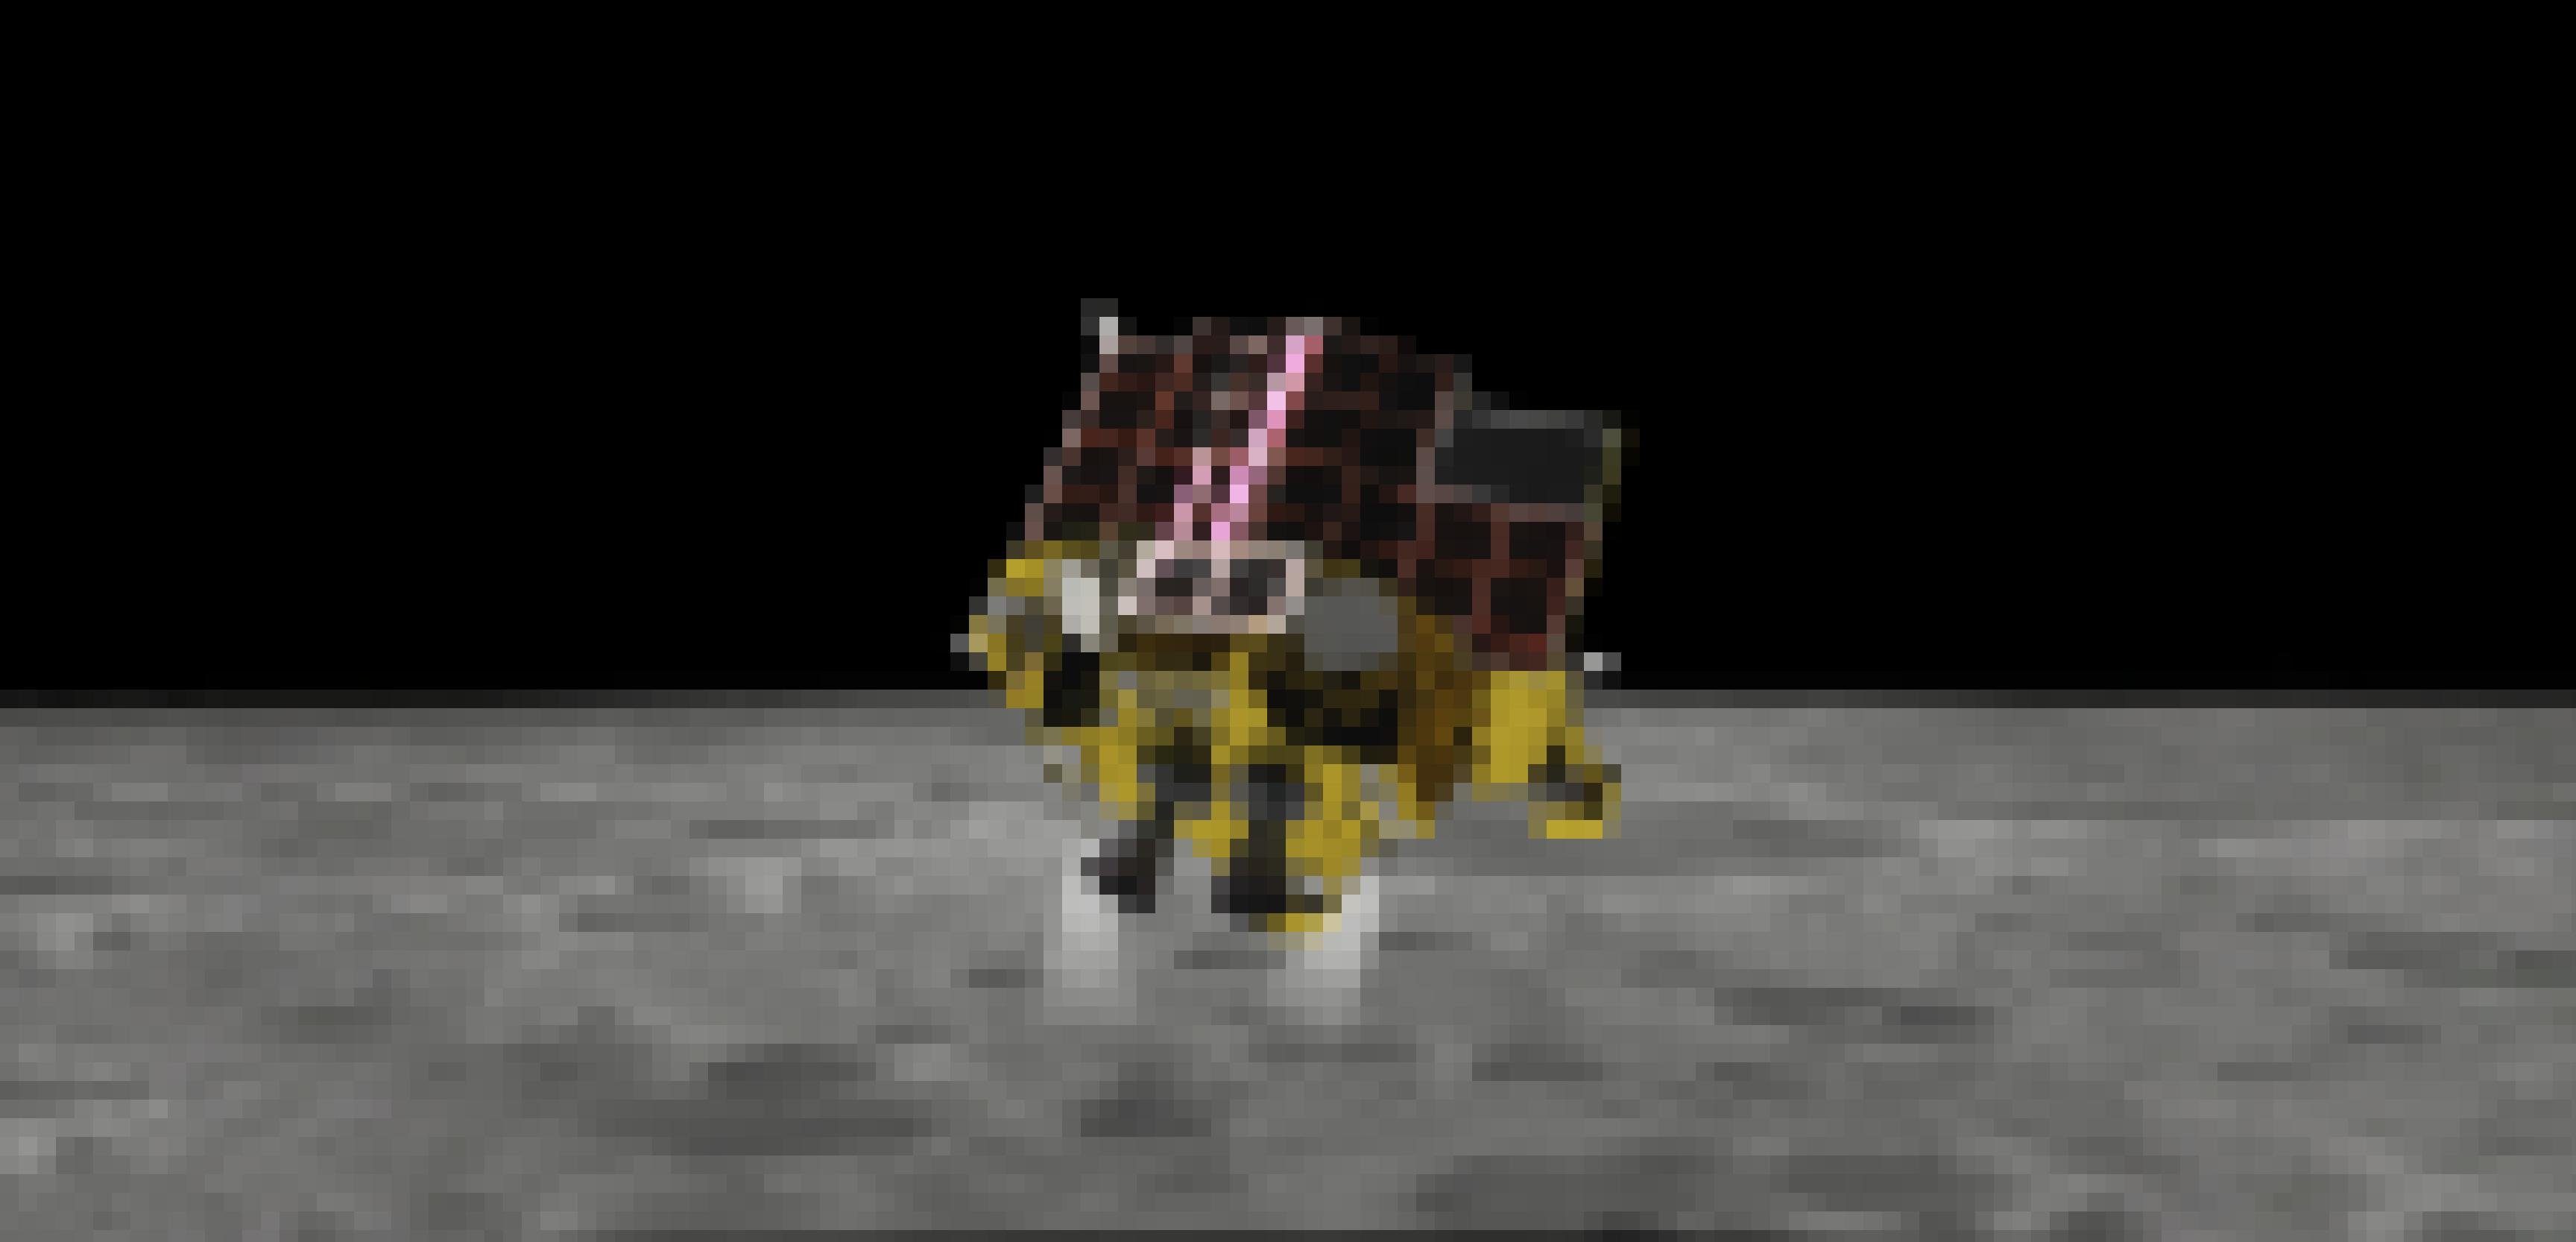 Das Mondlandefahrzeug SLIM beim Landeanflug auf dem Mond. Die Triebwerke sind eingeschaltet, damit das Fahrzeug seine Geschwindigkeit drosselt.